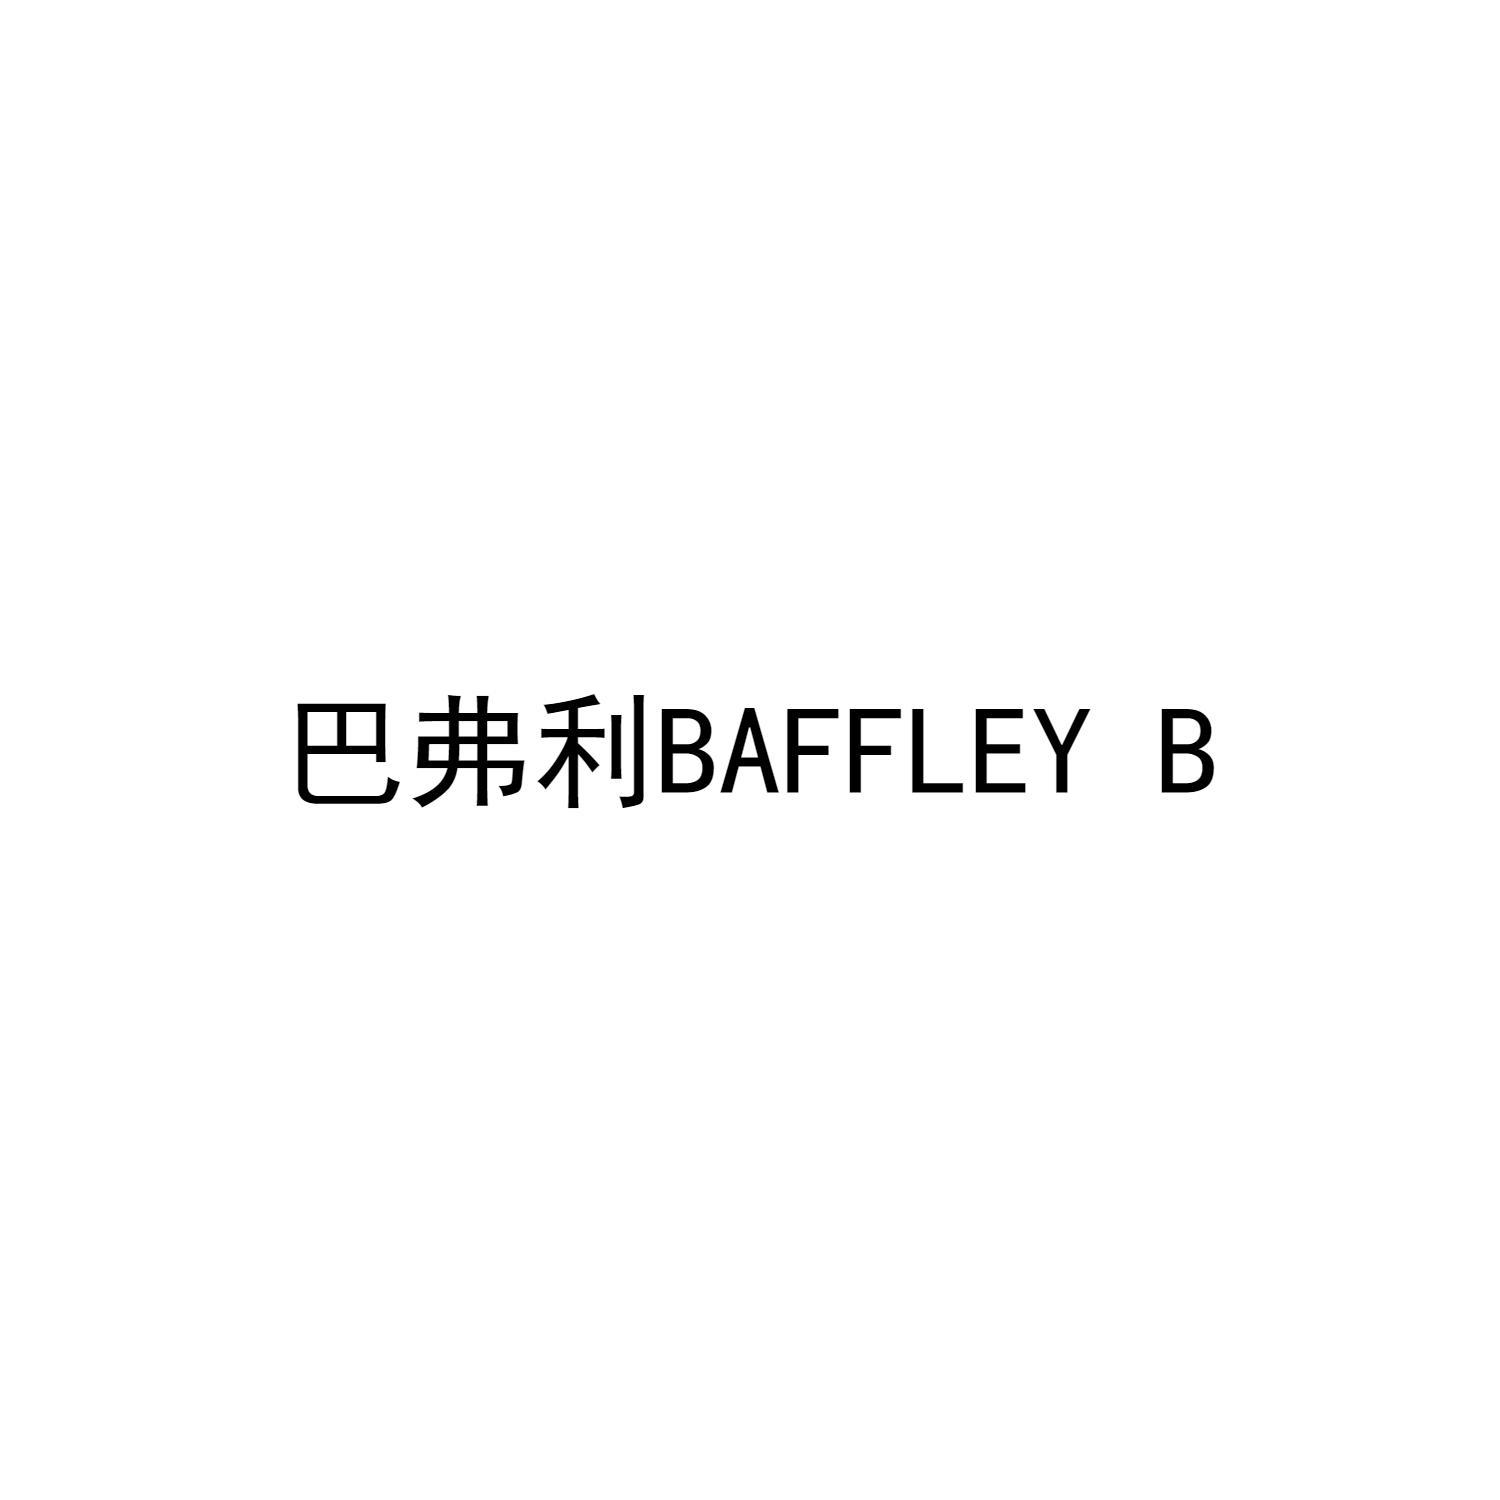 巴弗利BAFFLEY B